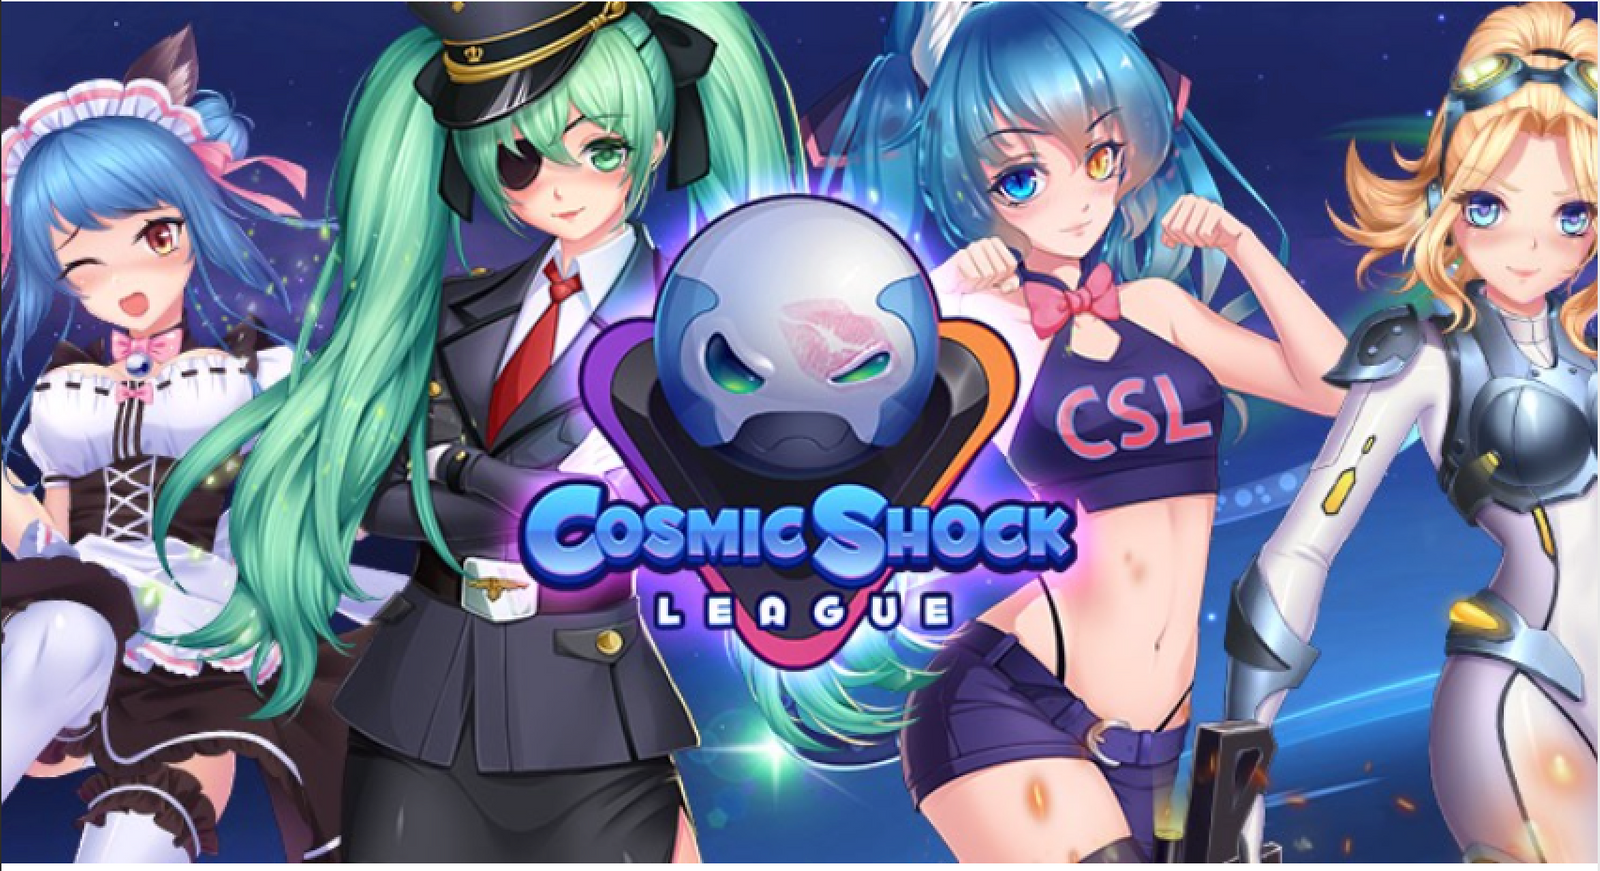 Nutaku Releases 'Cosmic Shock League' Adventure Puzzle